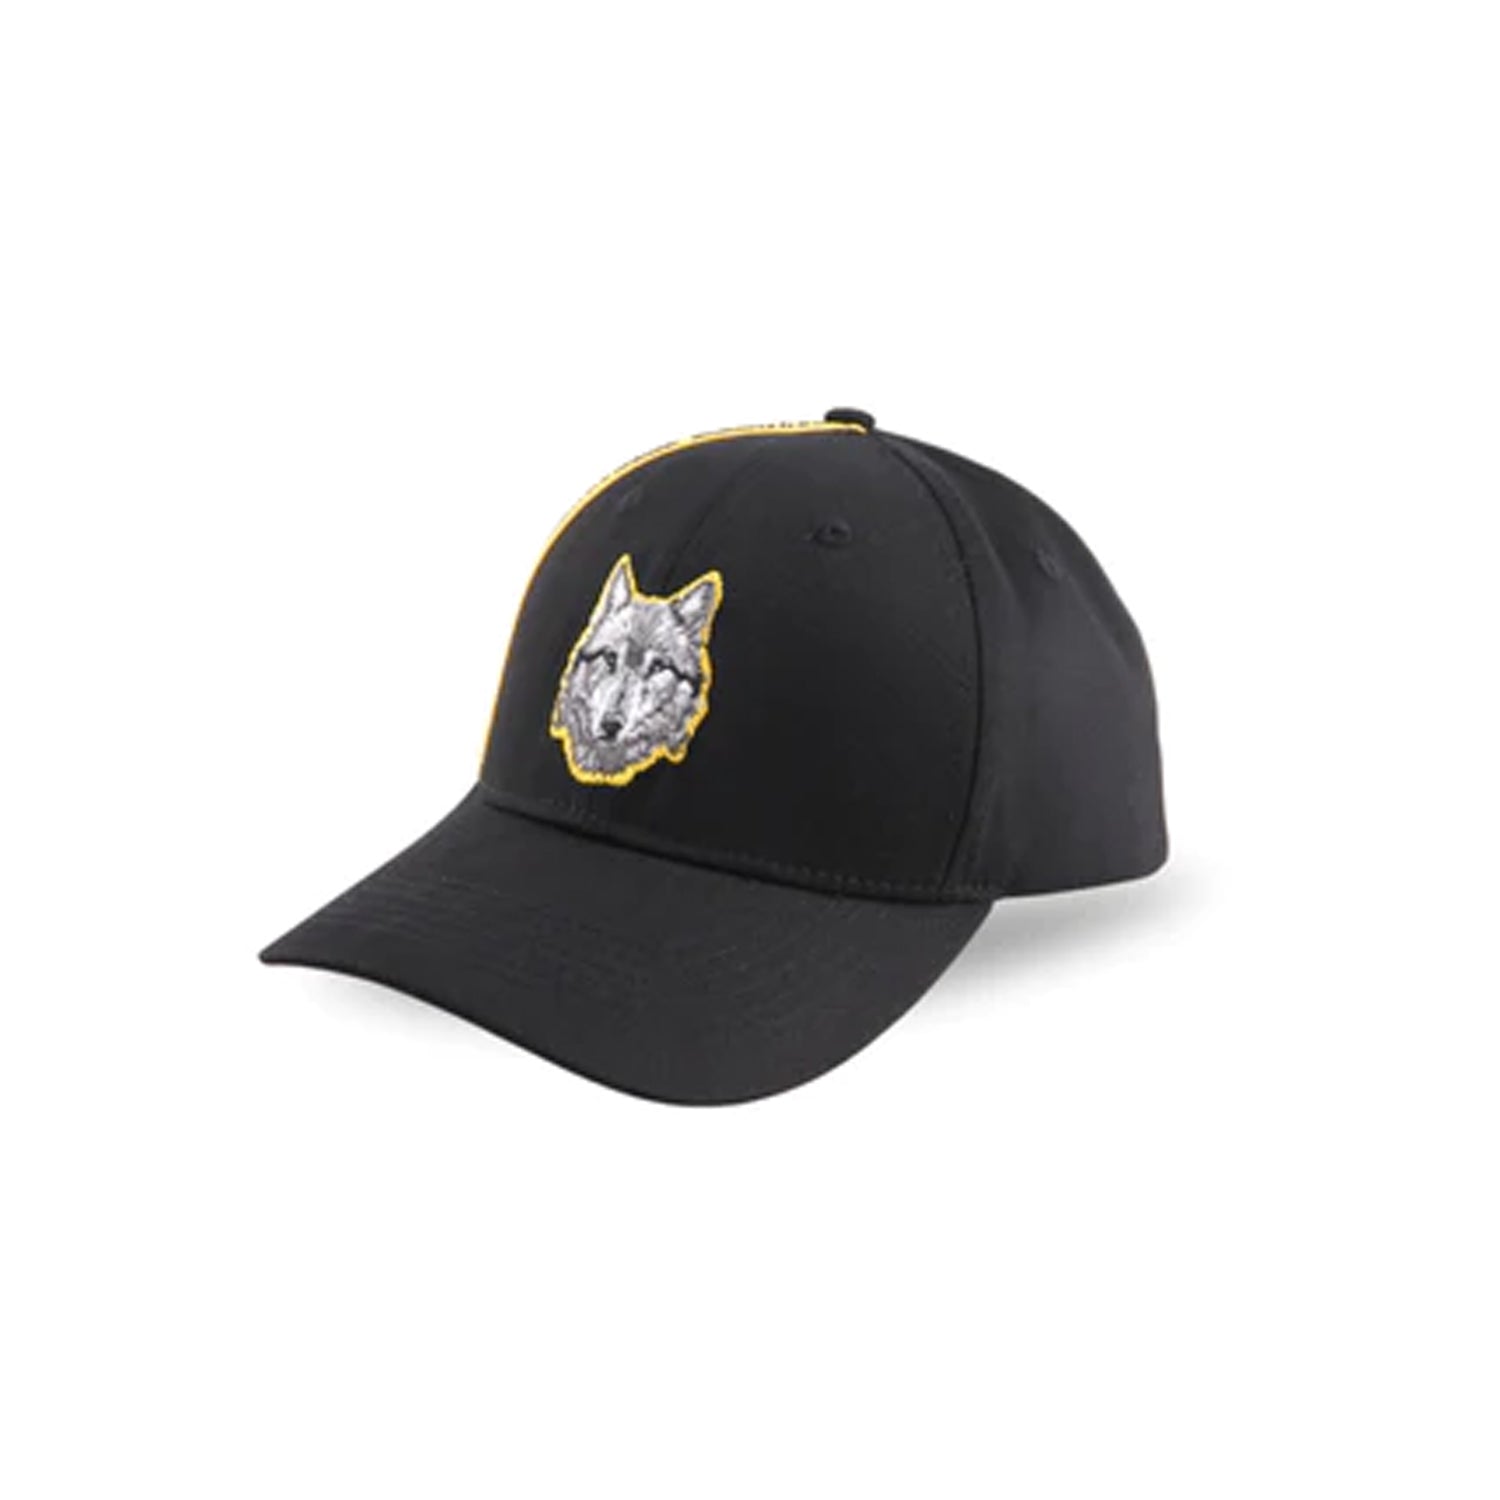 قبعة بيسبول سوداء وولف صفراء من هاوس أوف سينمار